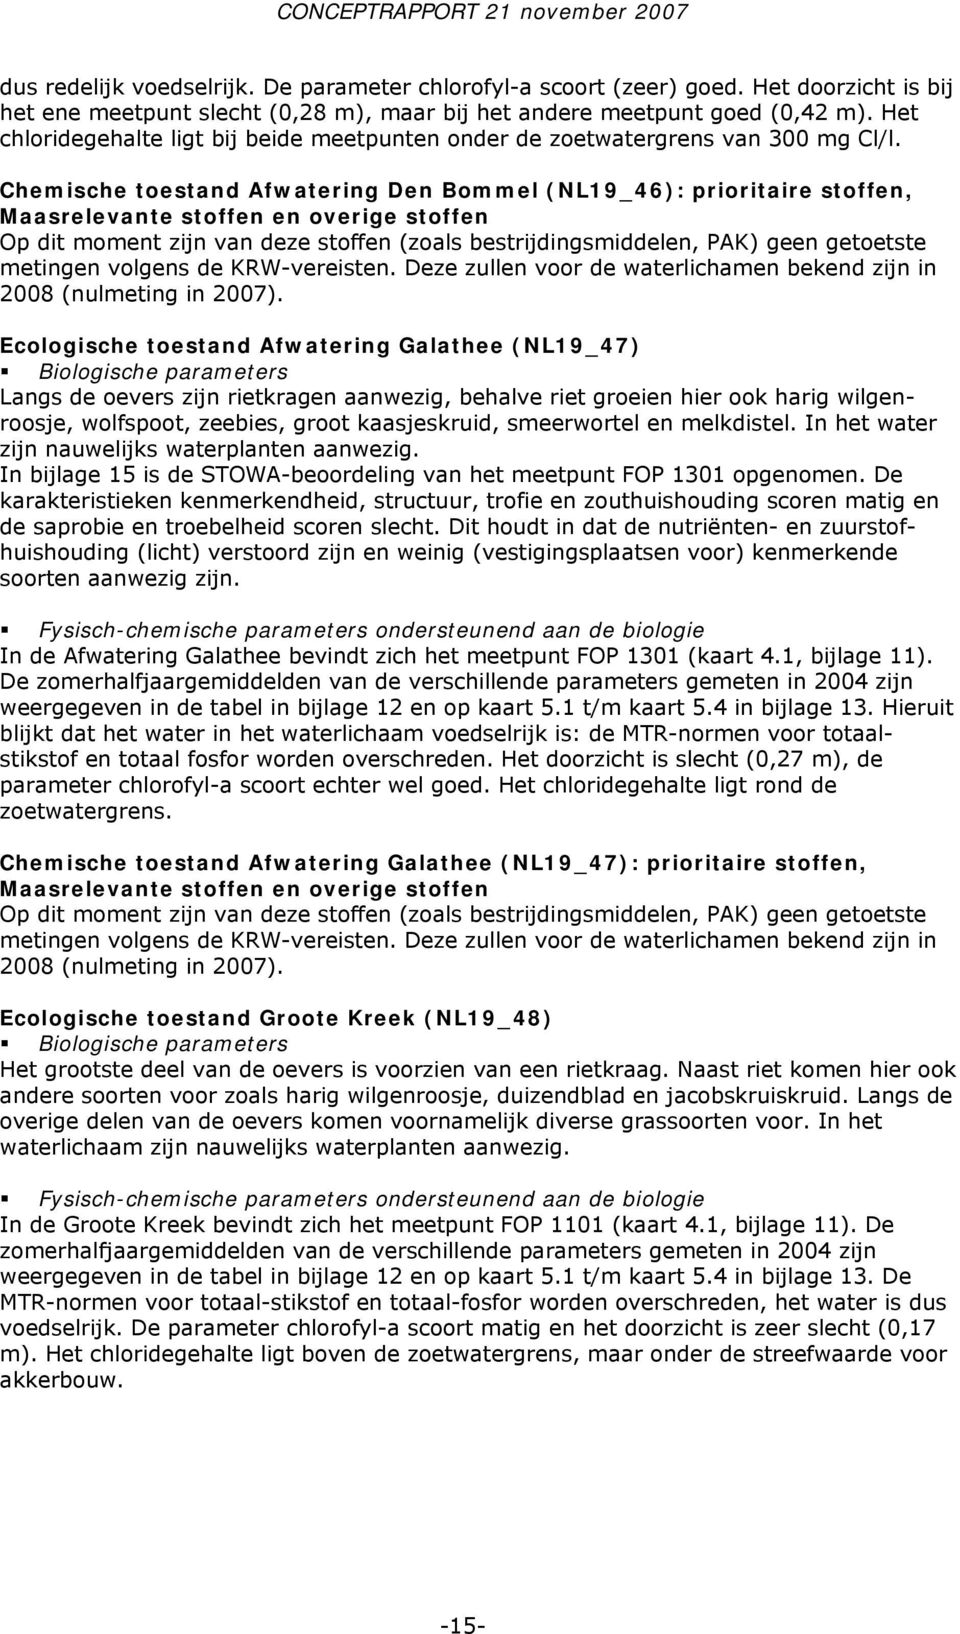 Chemische toestand Afwatering Den Bommel (NL19_46): prioritaire stoffen, Maasrelevante stoffen en overige stoffen Op dit moment zijn van deze stoffen (zoals bestrijdingsmiddelen, PAK) geen getoetste